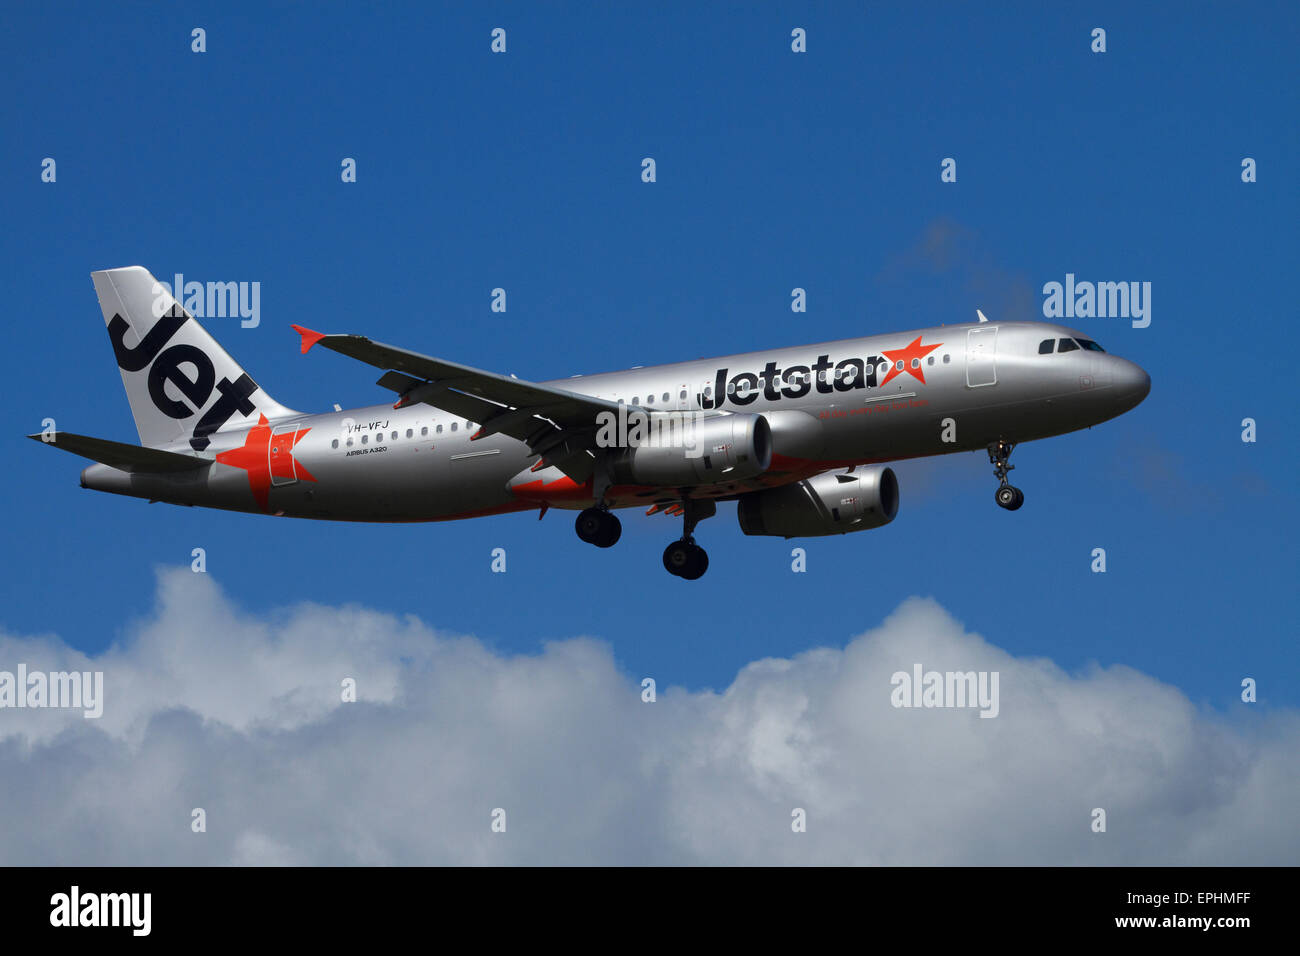 Jetstar Stockfotos und -bilder Kaufen - Alamy